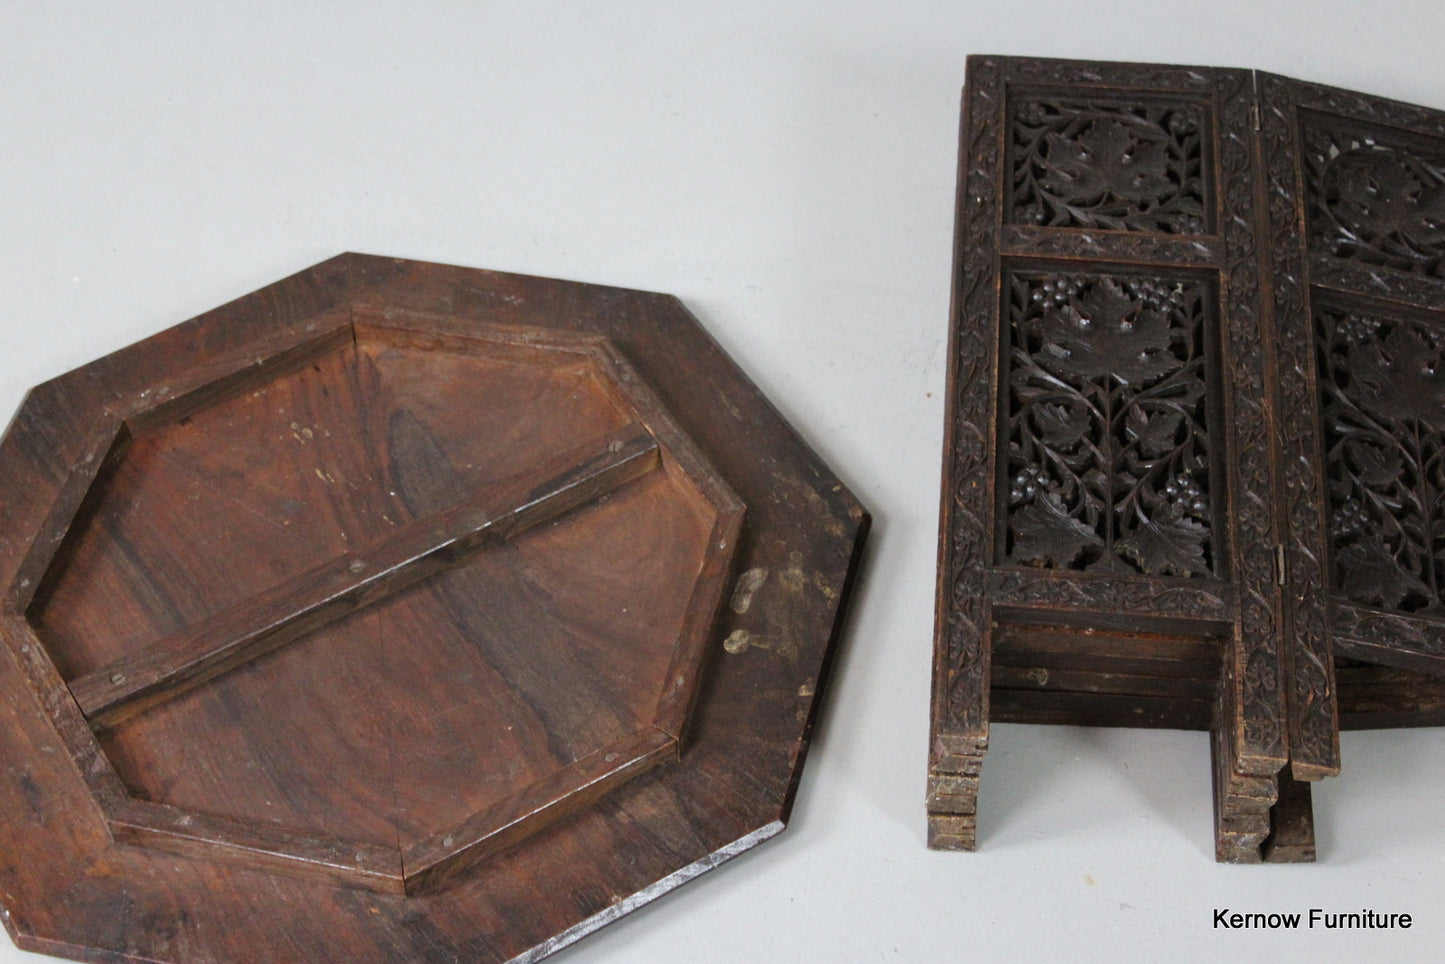 Carved Eastern Side Table - Kernow Furniture